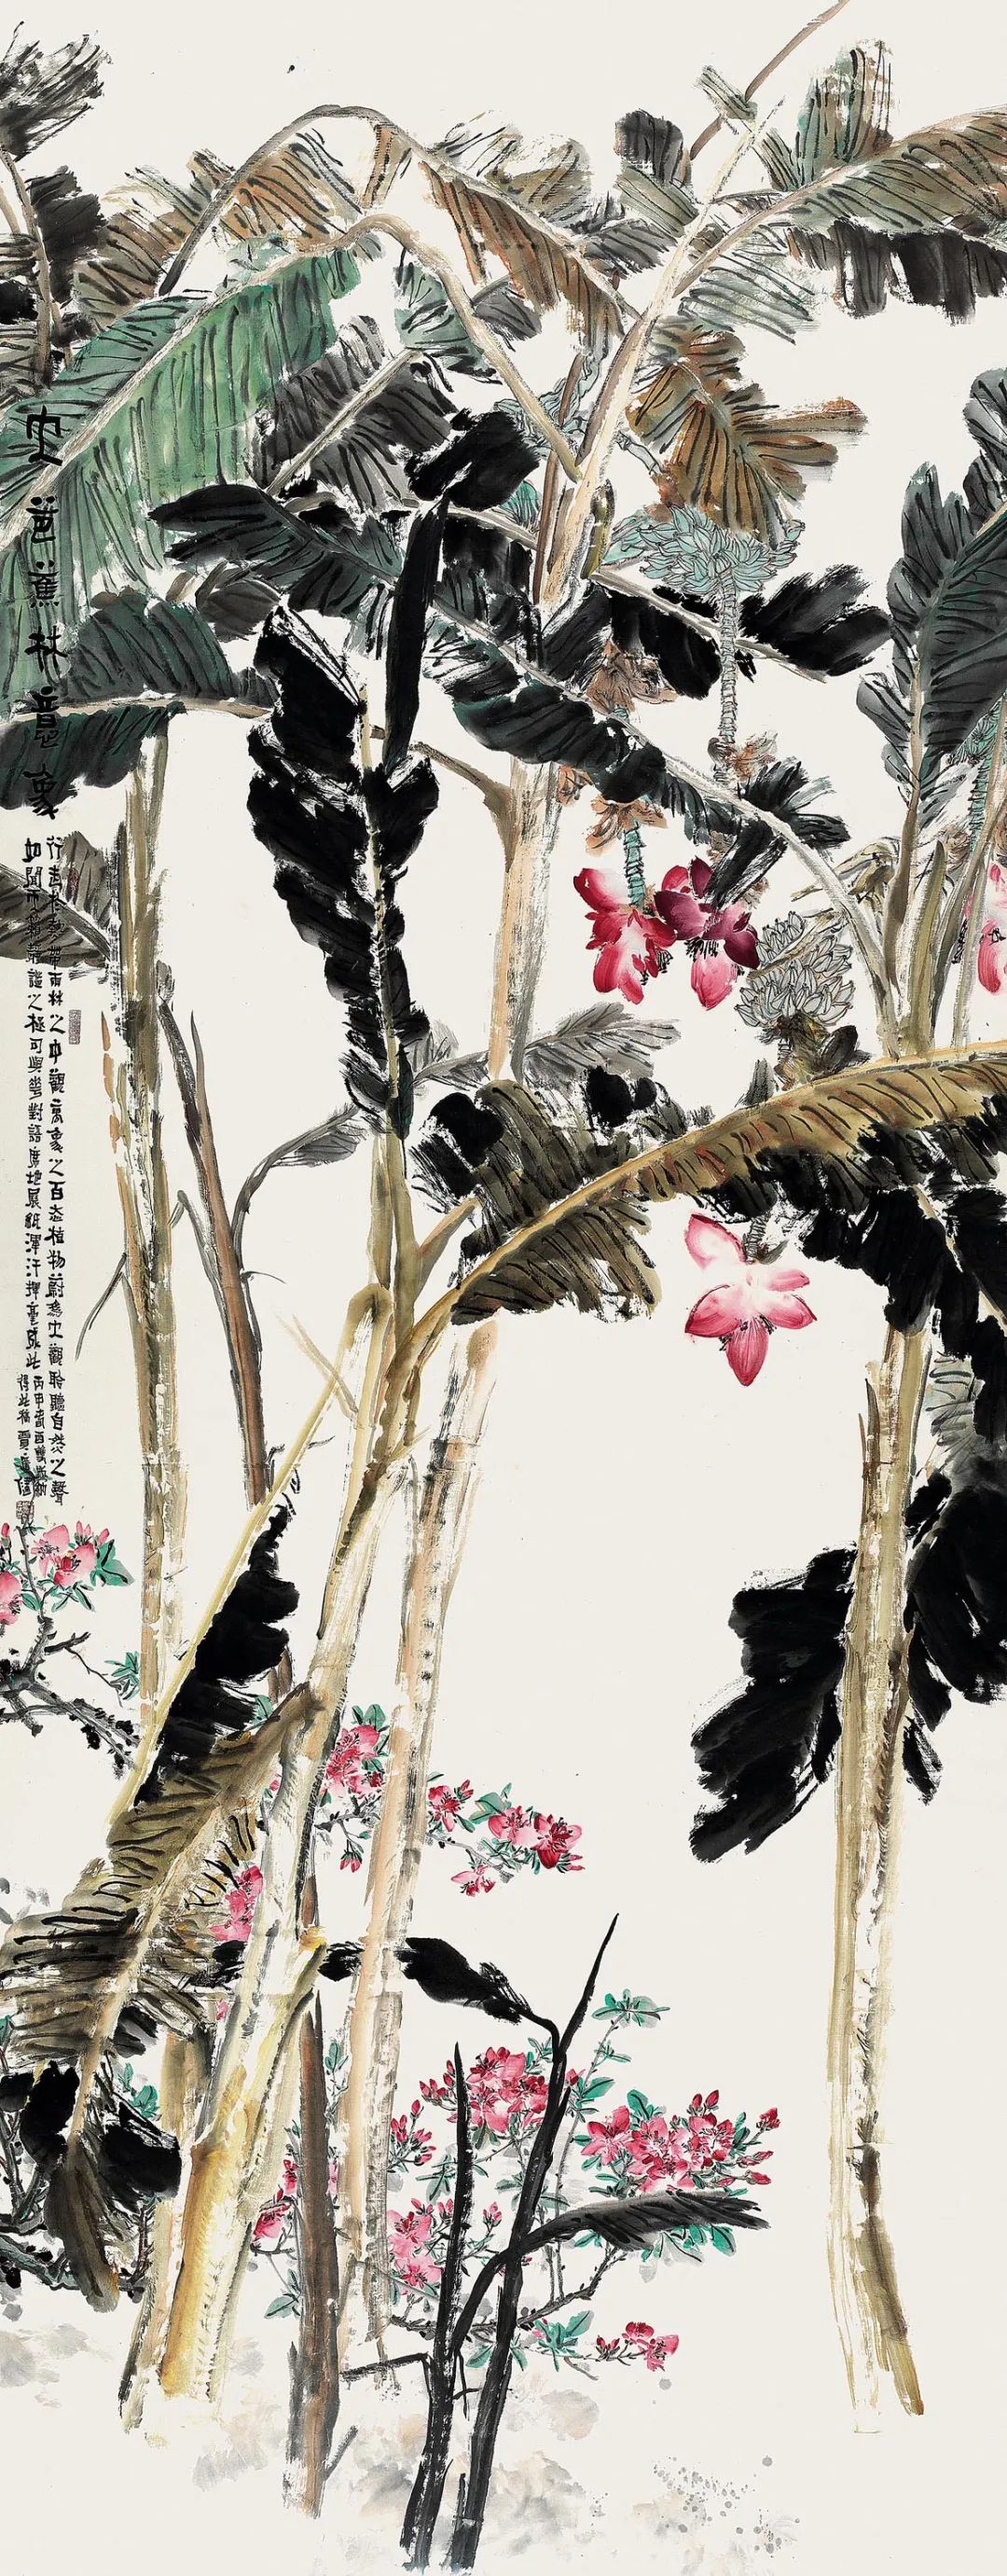 贾广健 大芭蕉林意象 363cm×143cm 纸本设色 2016年